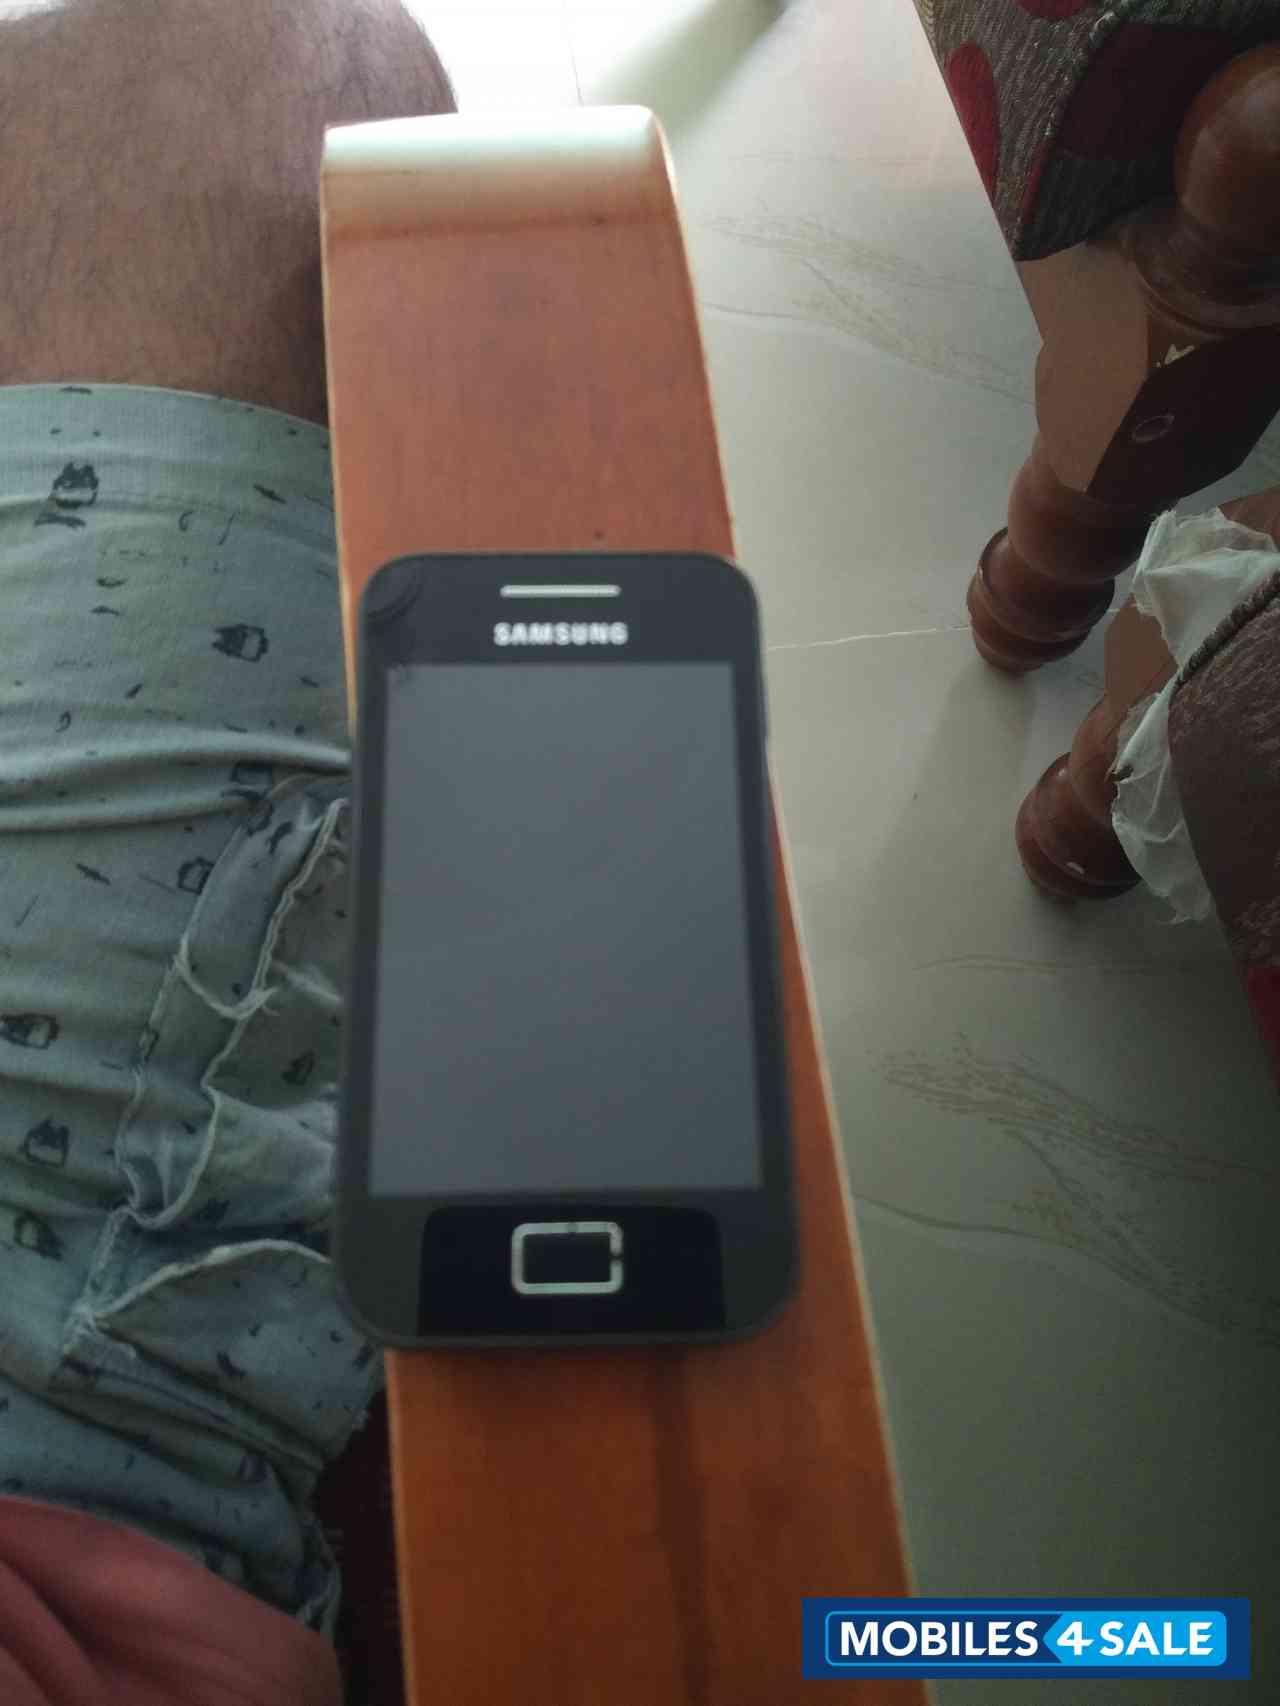 Black Samsung  Galaxy ace GT 5830i